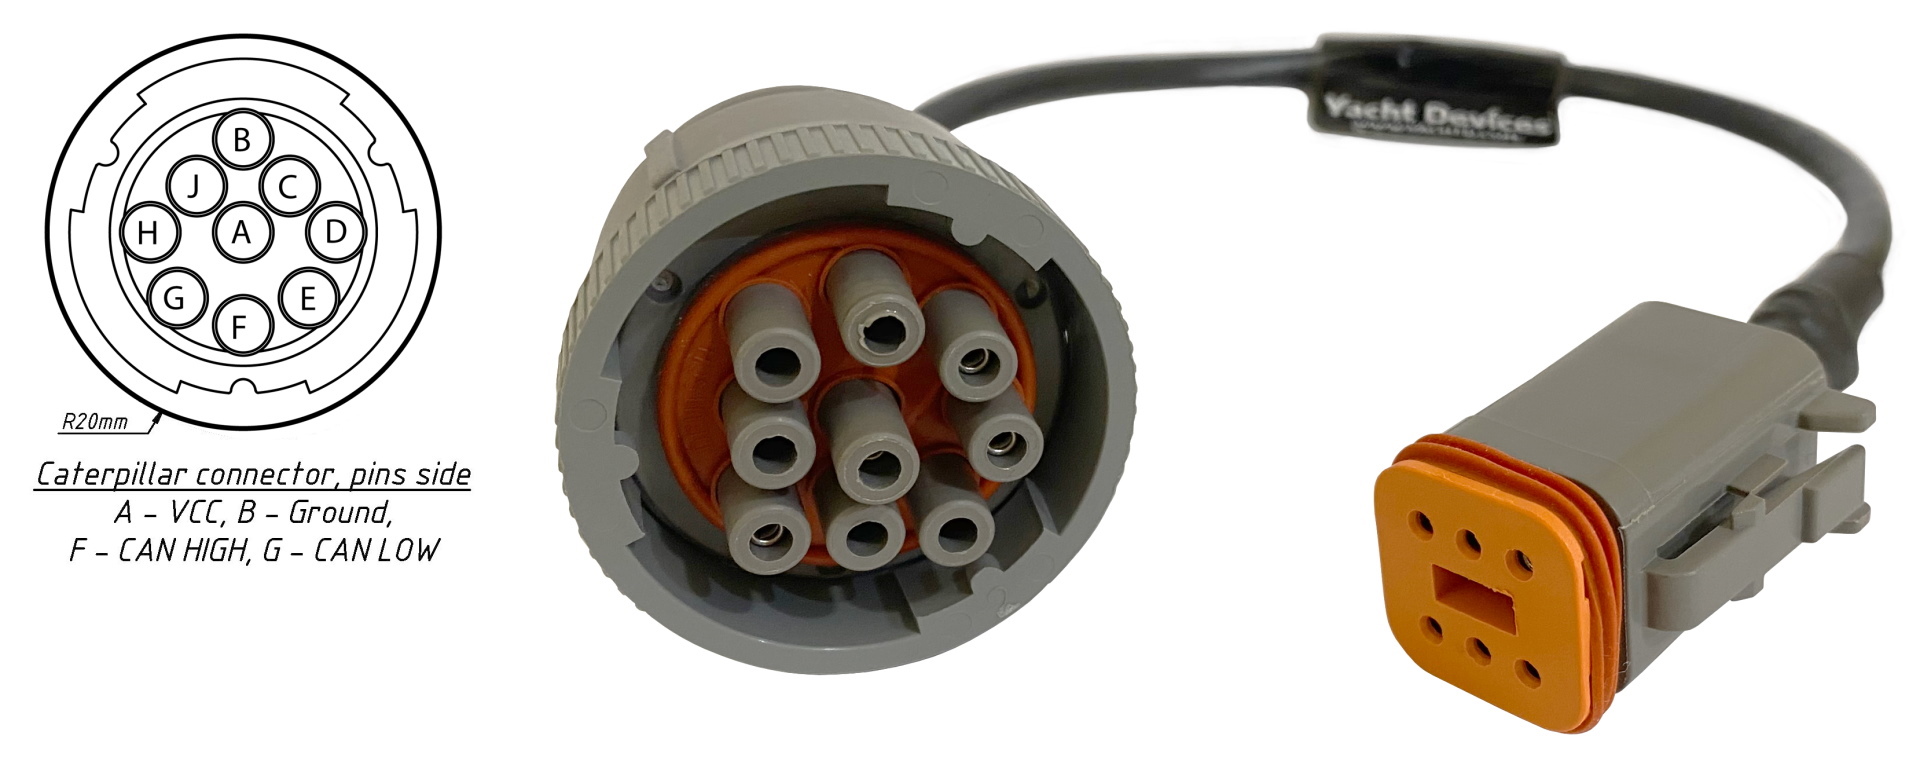 Uitgaan Dominant Hangen Caterpillar 9P kabel voor YDEG – SlimSchip B.V.